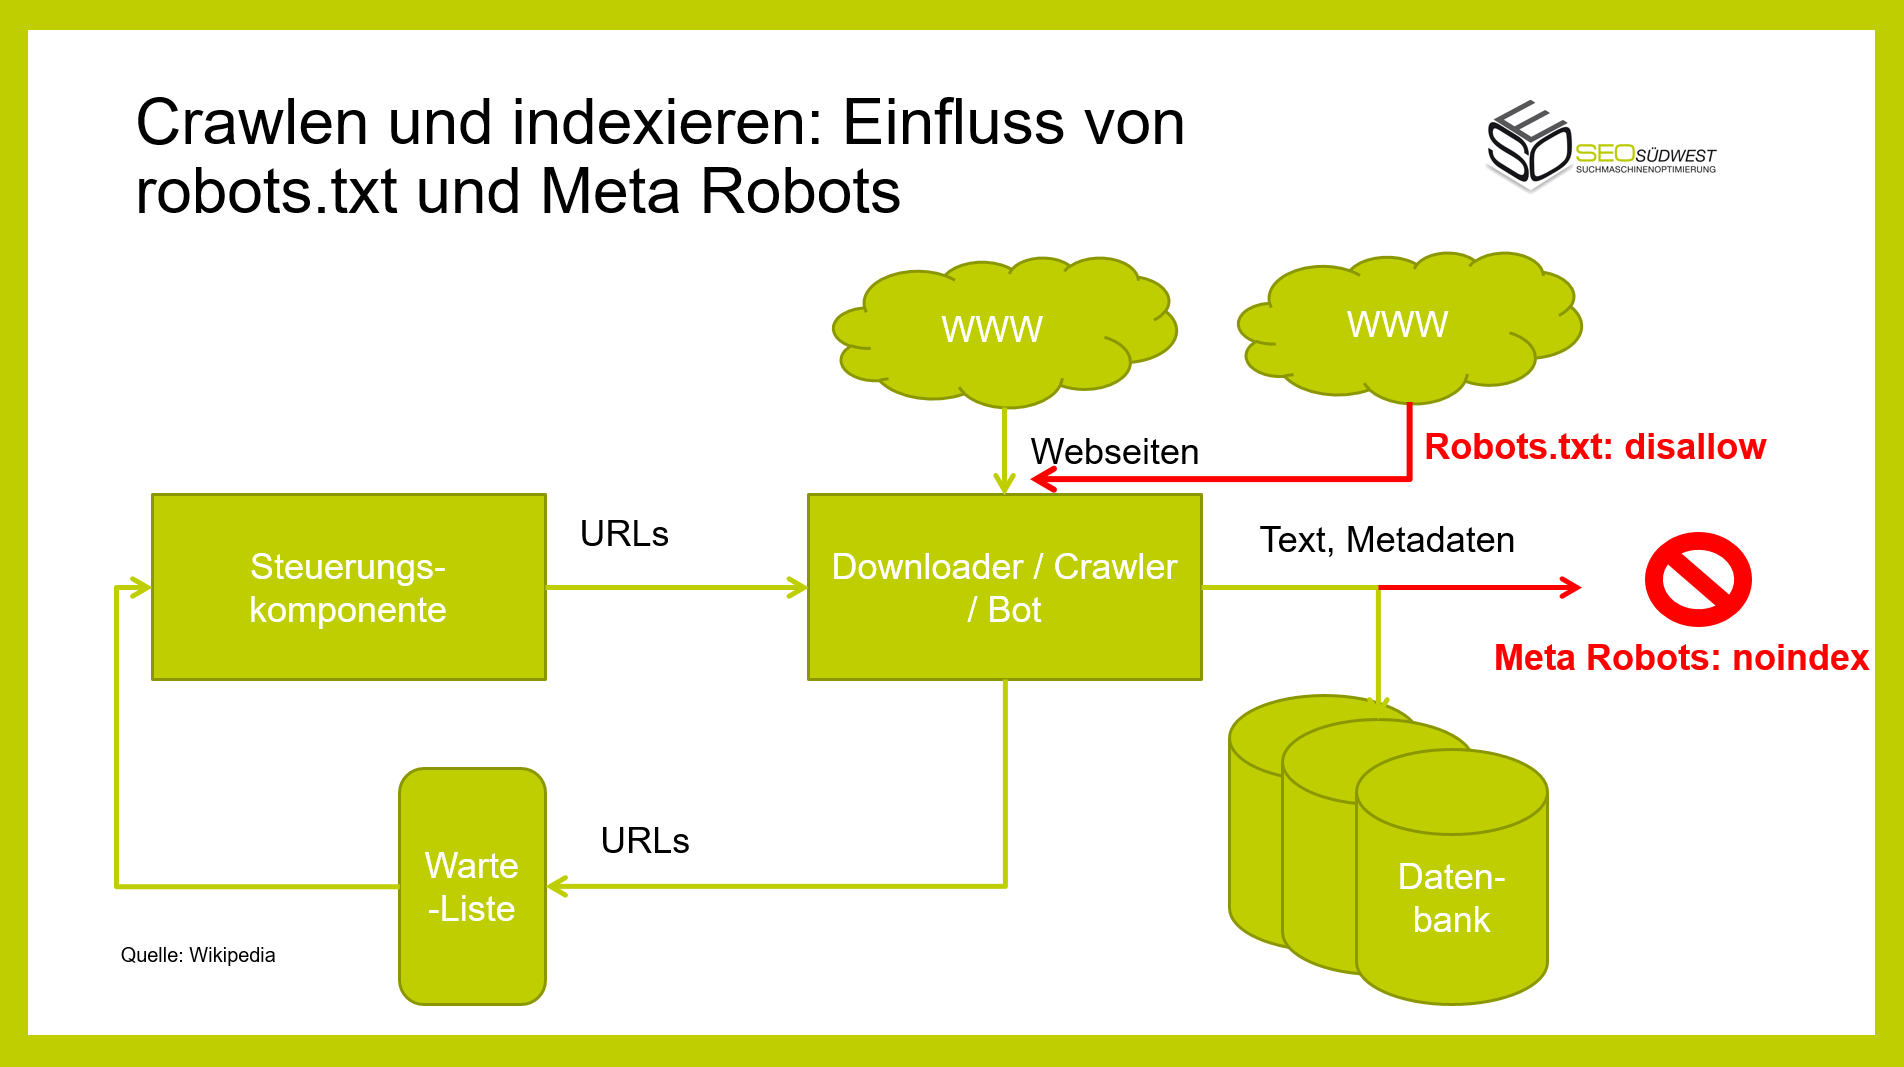 Crawlen und Indexieren und der Einfluss von robotx.txt und 'noindex'